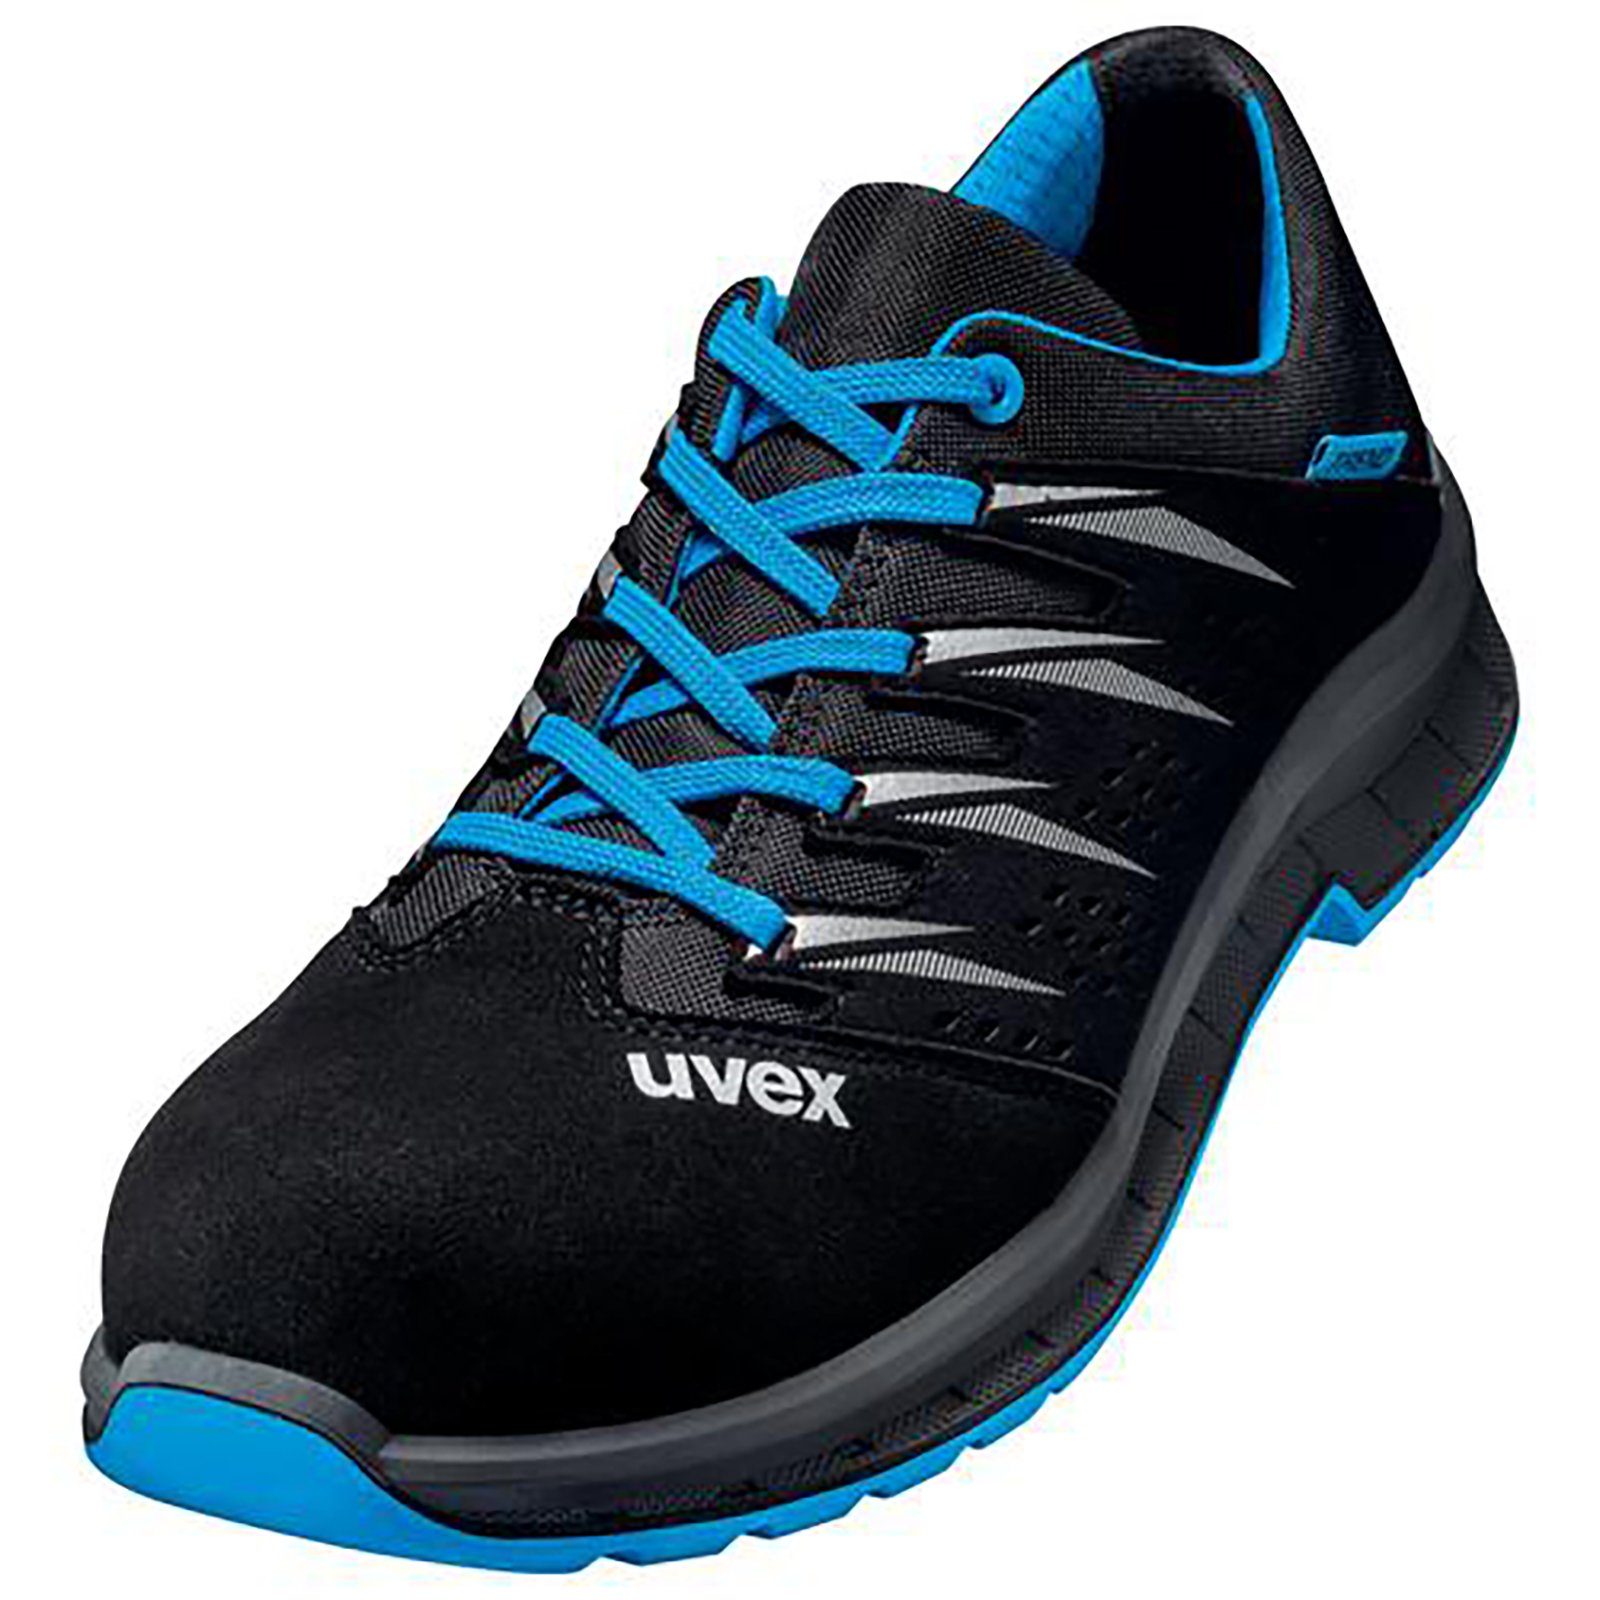 Uvex 2 Sicherheitsschuh Weite Halbschuhe trend schwarz blau, S1 10